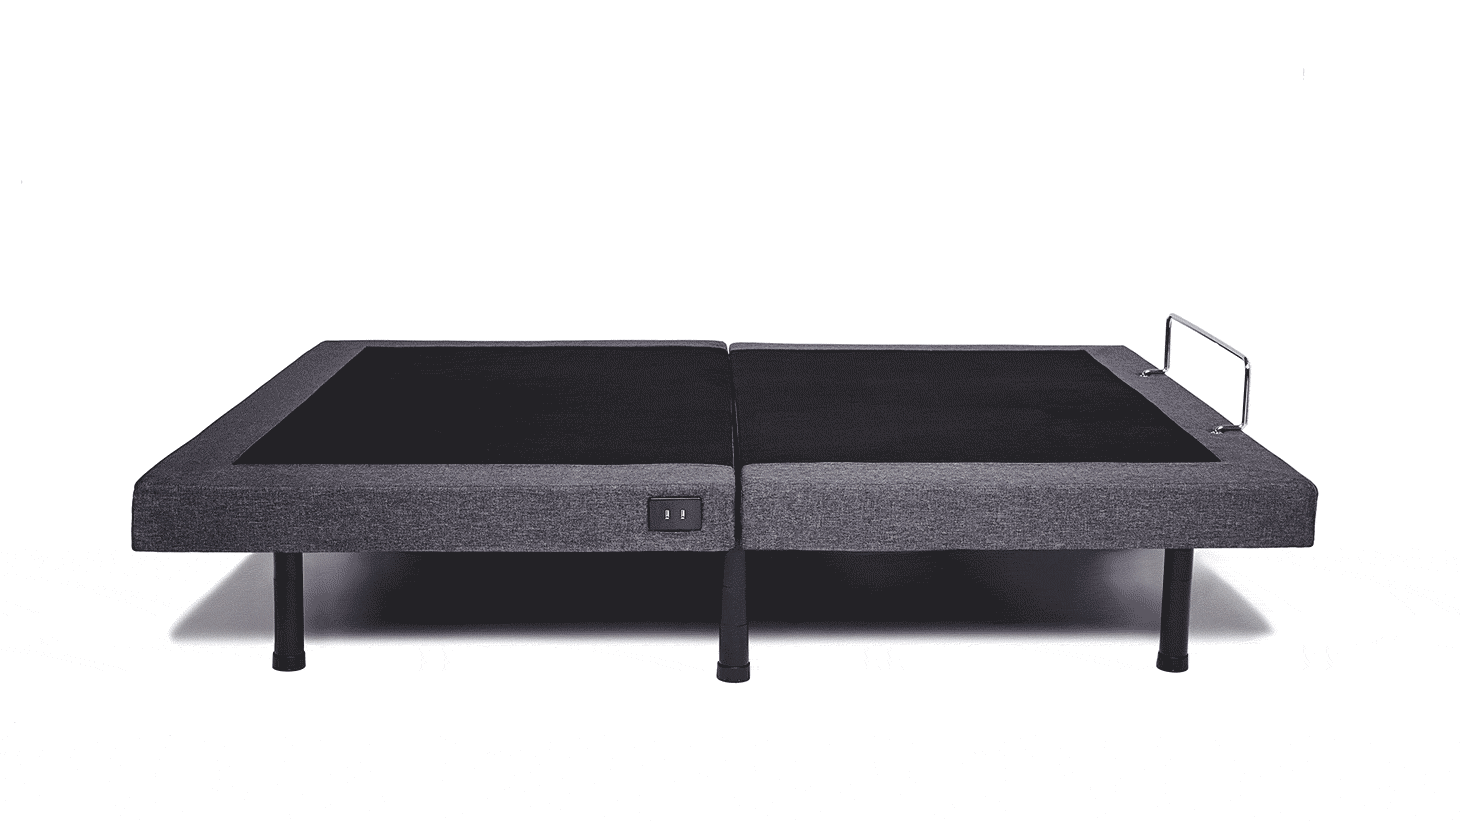 Split King Size Adjustable Bed Frames, How To Use Adjustable Bed Frame